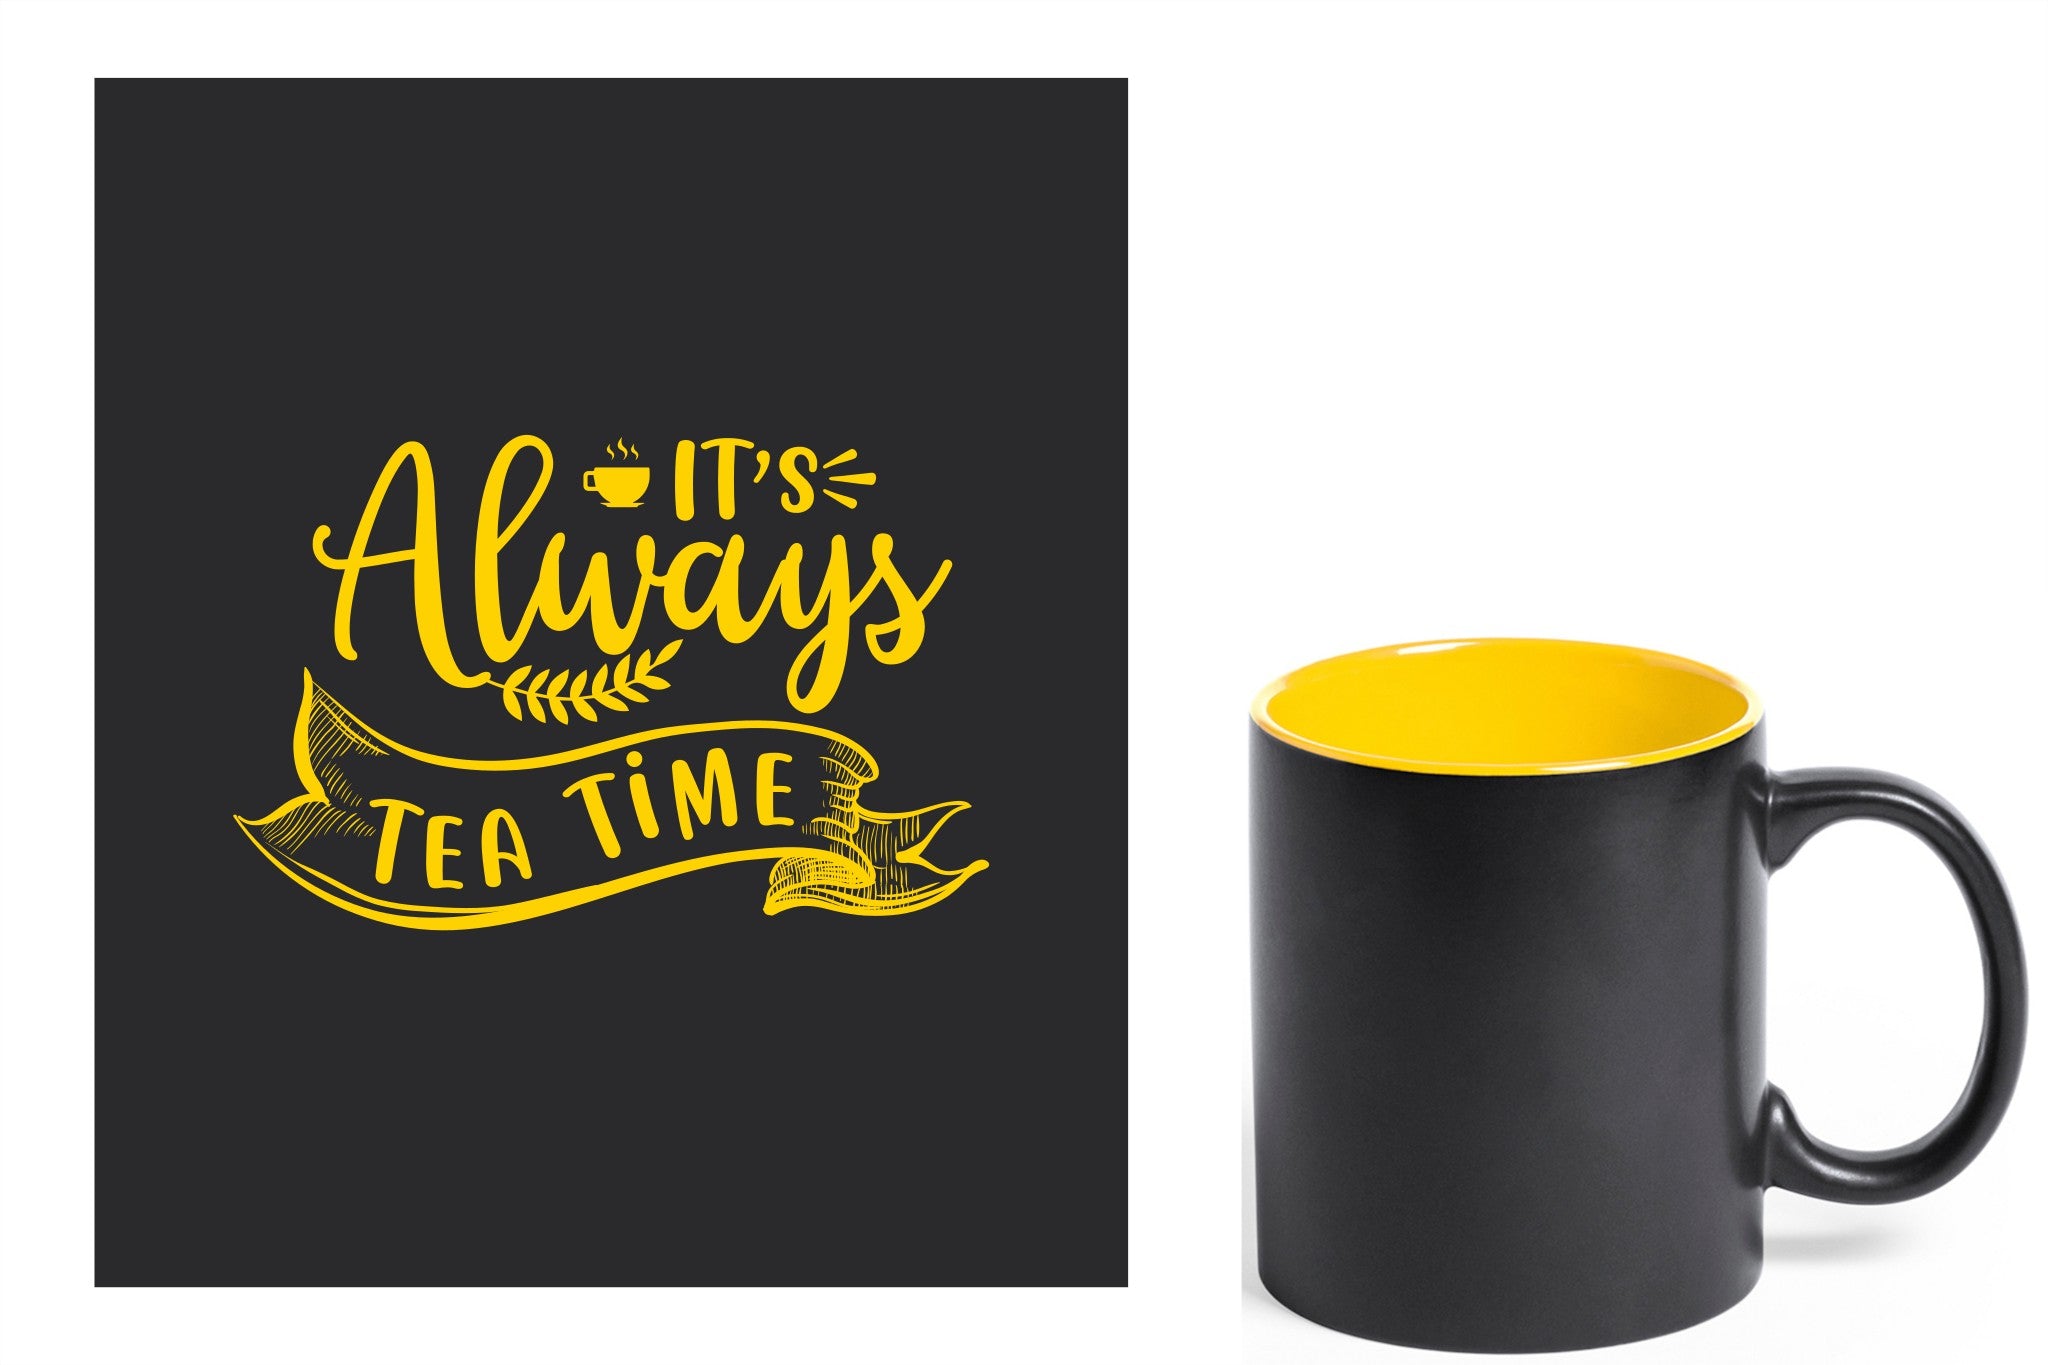 zwarte keramische mok met gele gravure  'It's always tea time'.